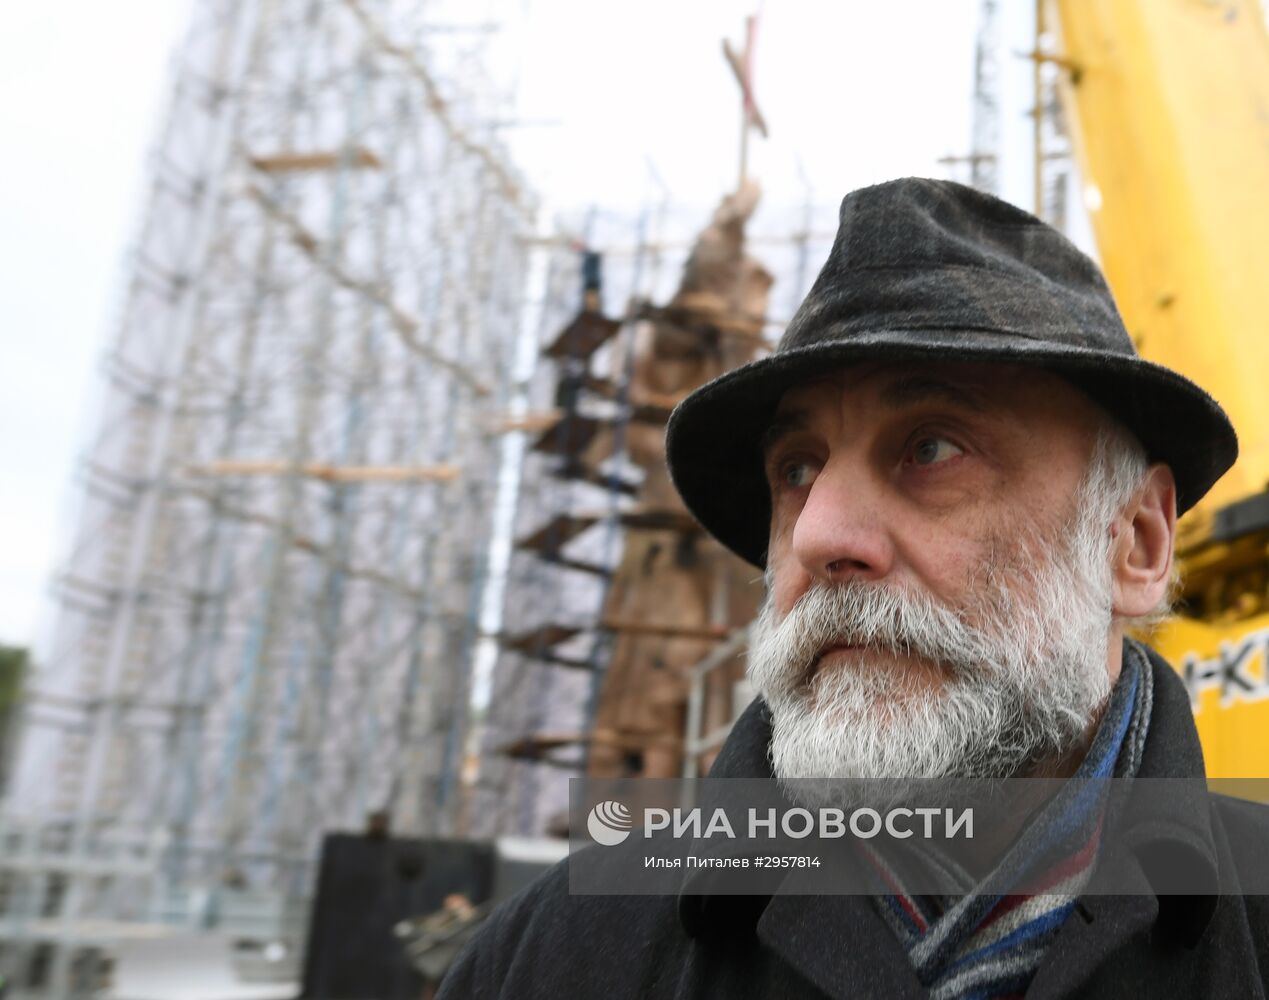 Продолжается монтаж памятника князю Владимиру на Боровицкой площади в Москве